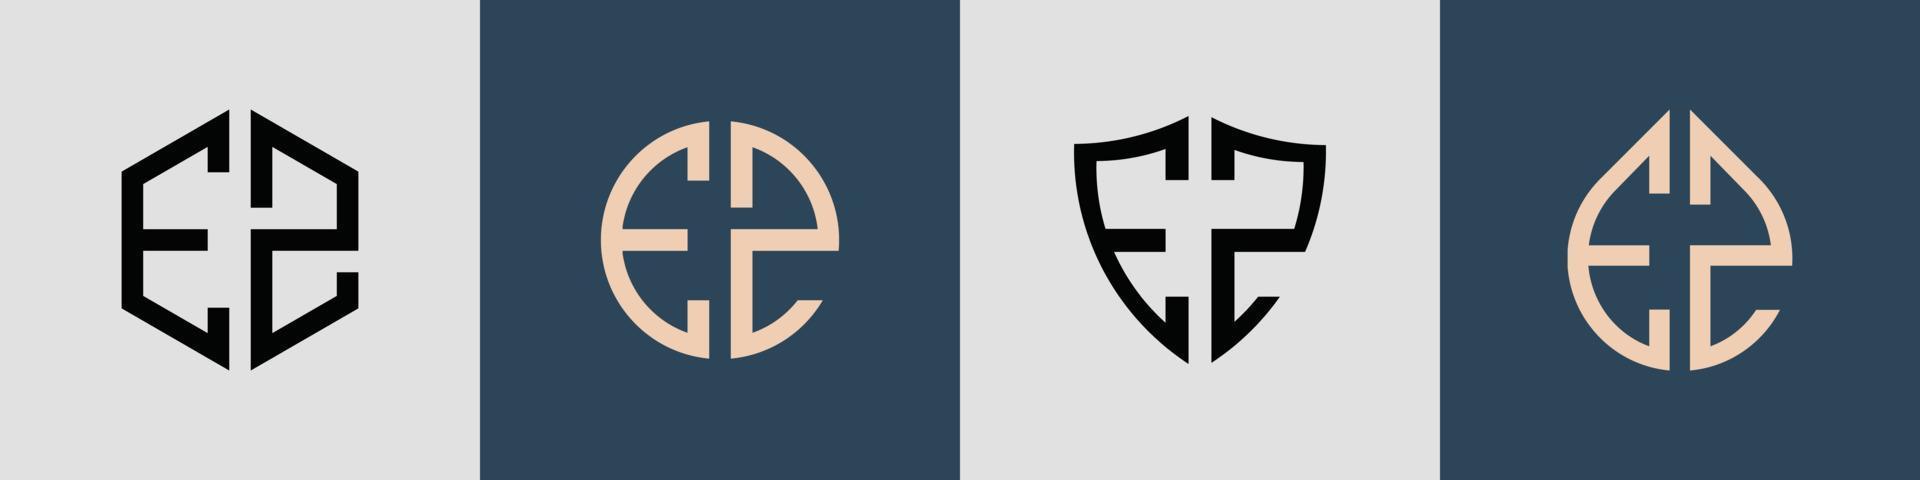 ensemble de conceptions de logo ez de lettres initiales simples créatives. vecteur